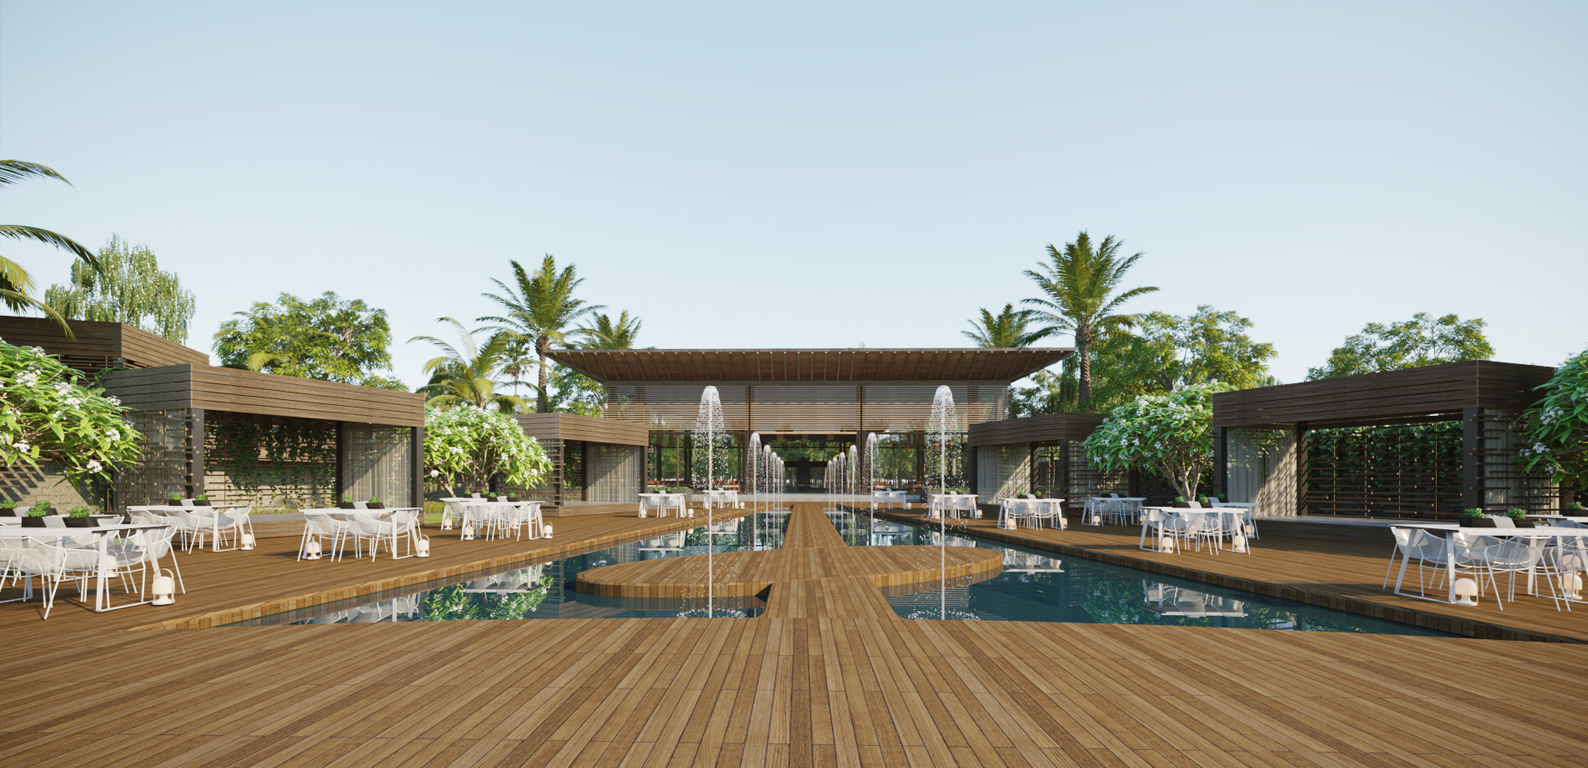 thiết kế Resort tại Khánh Hòa Resort Quốc Bảo 8 1531359421